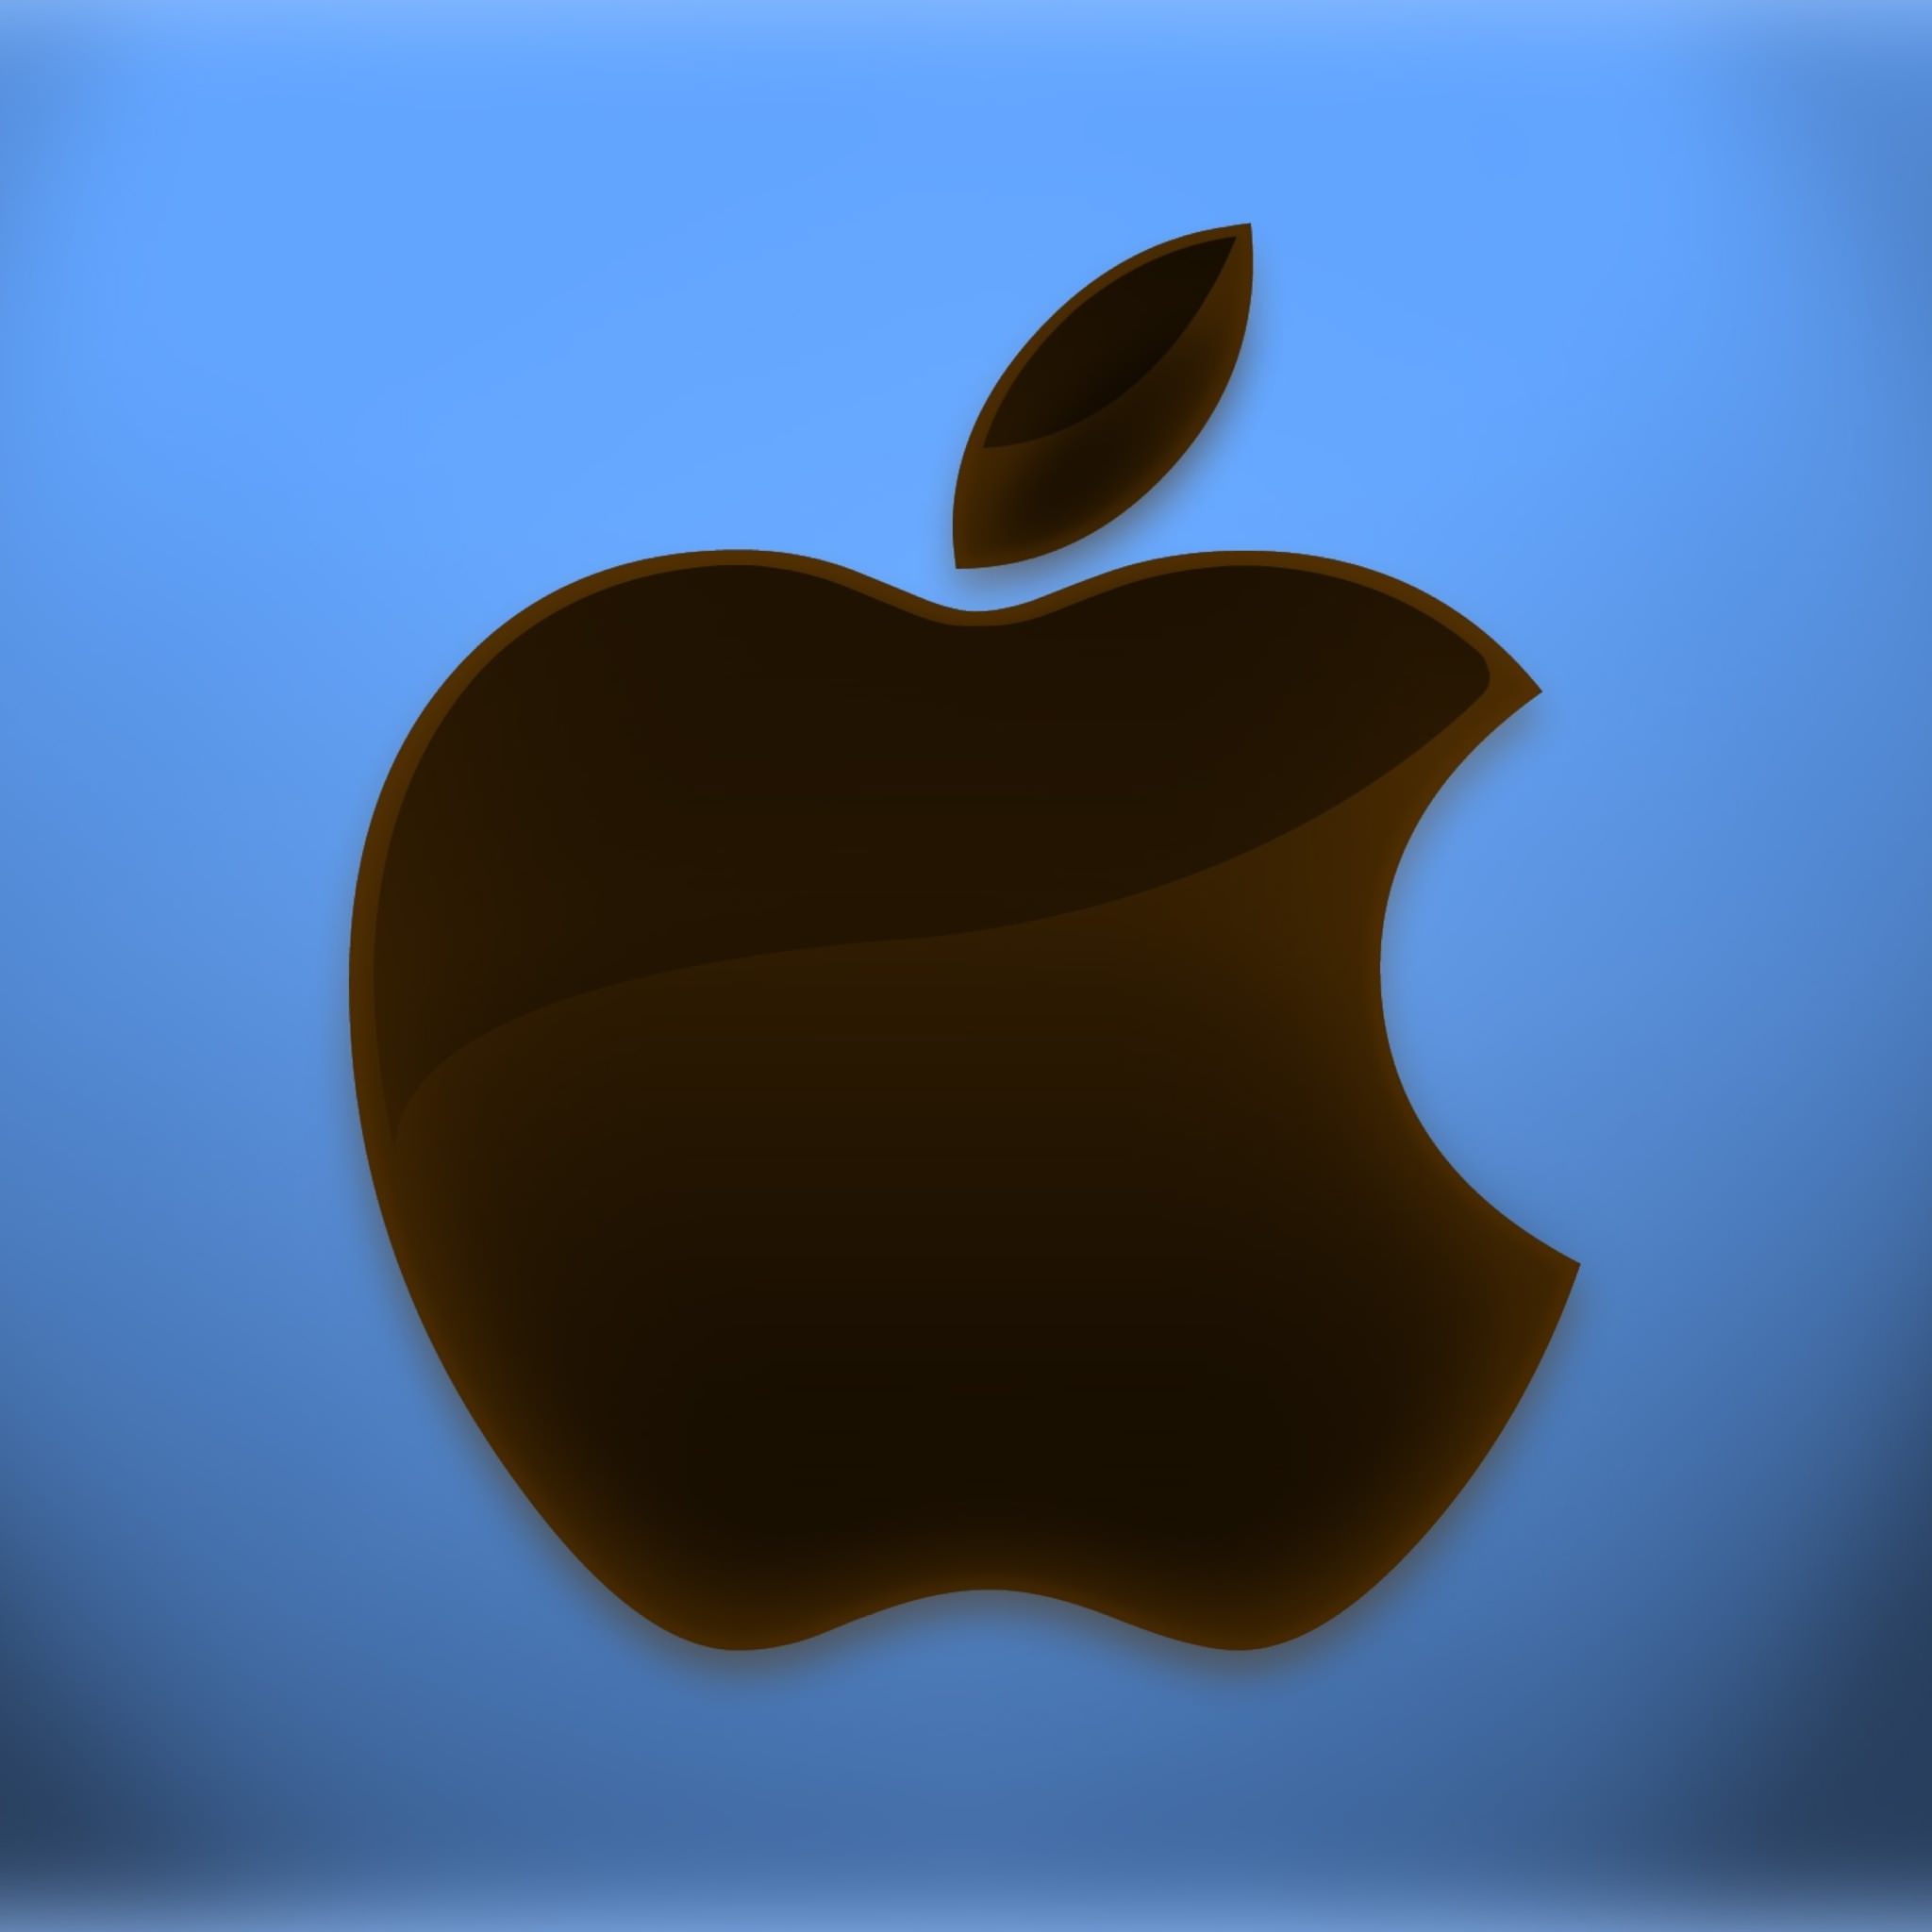 Обои на айфон яблоко. Логотип Apple. Яблоко айфон. Значок айфона. Обои Apple.